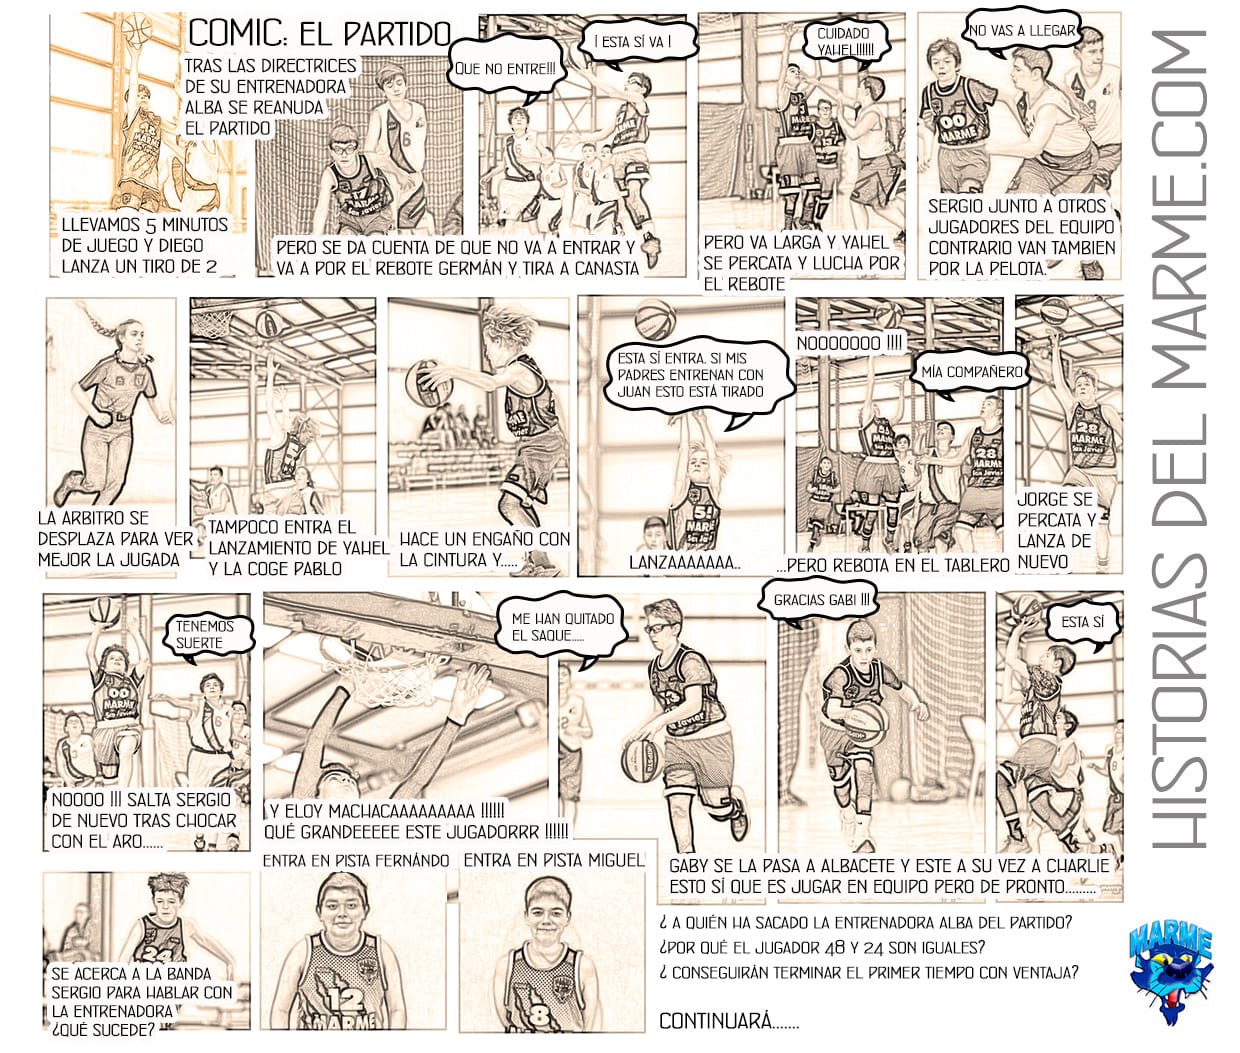 El cómic del Marme (gentileza de Daniel Fernández)